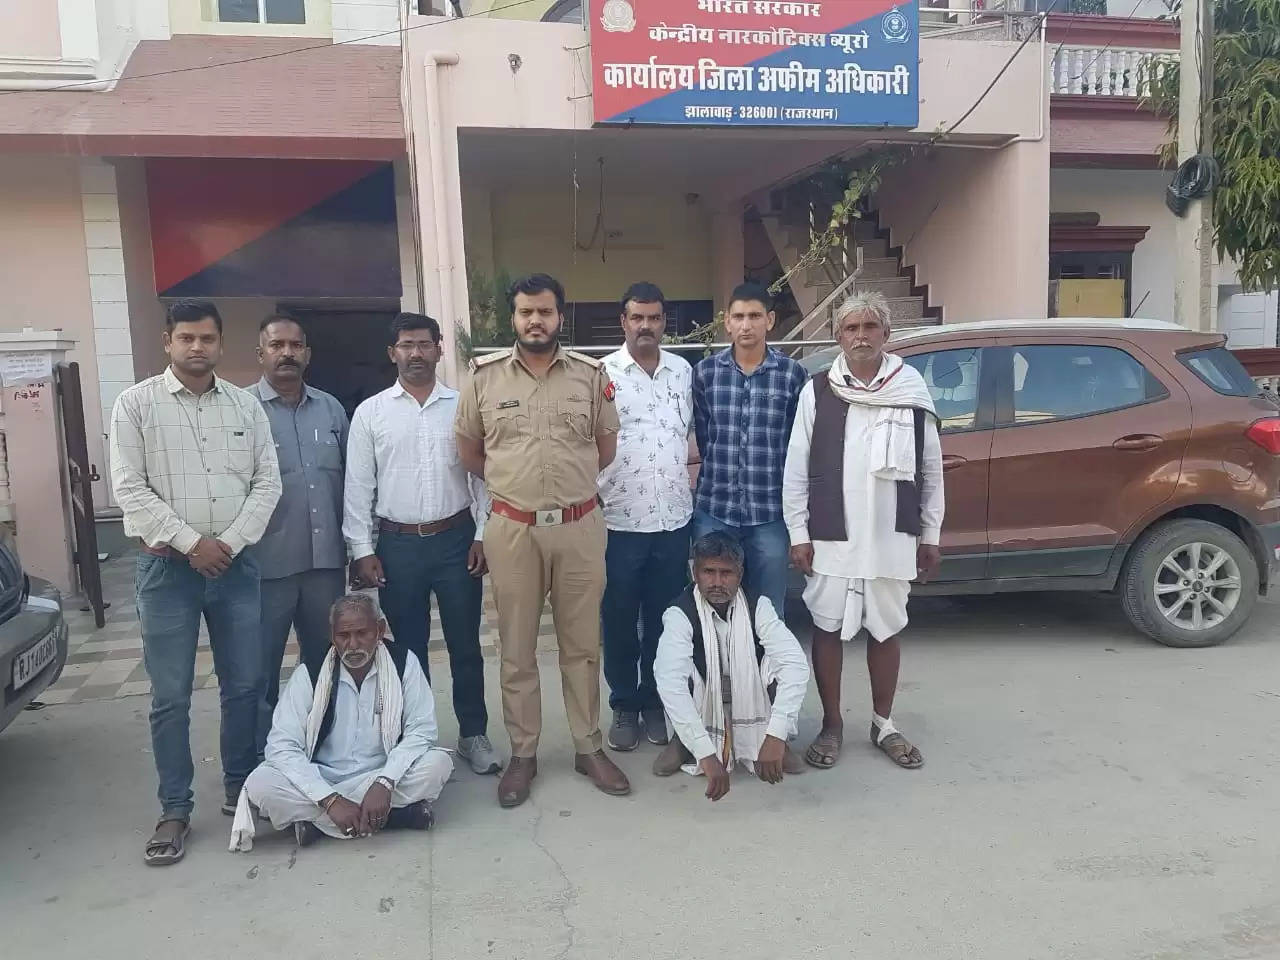 नारकोटिक्स ब्यूरो का उप निरीक्षक (गिरदावर) और दो दलाल साठ हजार रुपये की रिश्वत लेते गिरफ्तार